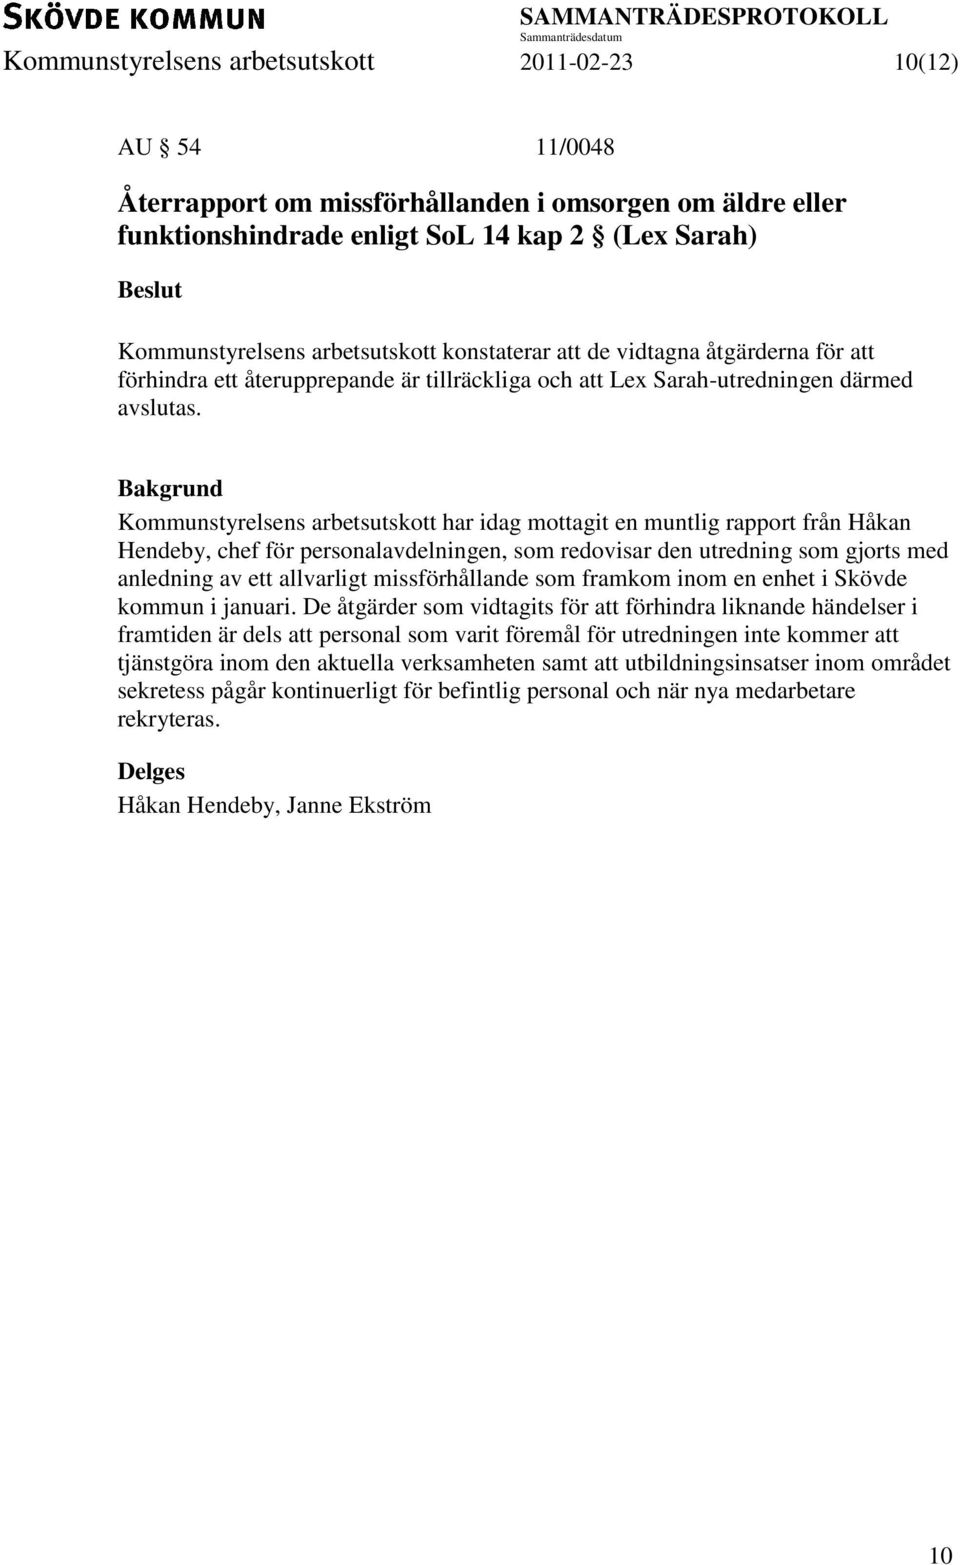 Kommunstyrelsens arbetsutskott har idag mottagit en muntlig rapport från Håkan Hendeby, chef för personalavdelningen, som redovisar den utredning som gjorts med anledning av ett allvarligt